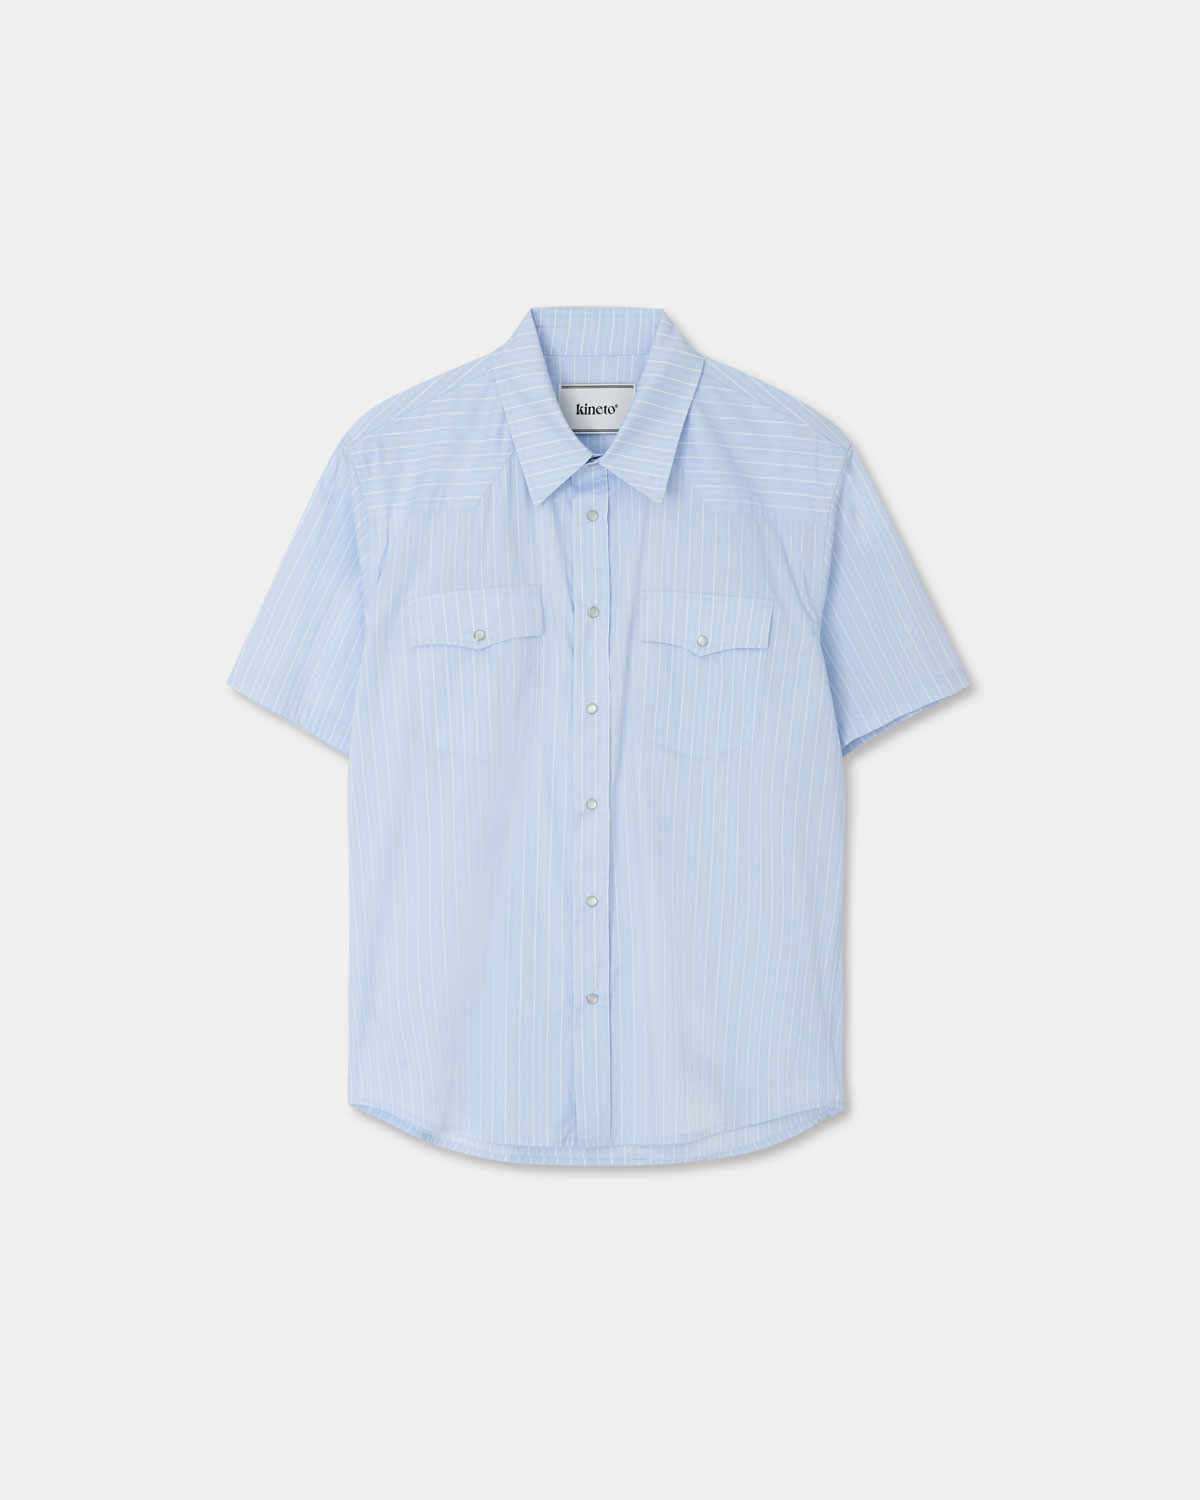 Western Stripe Pattern Shirt_Sky Blue_W